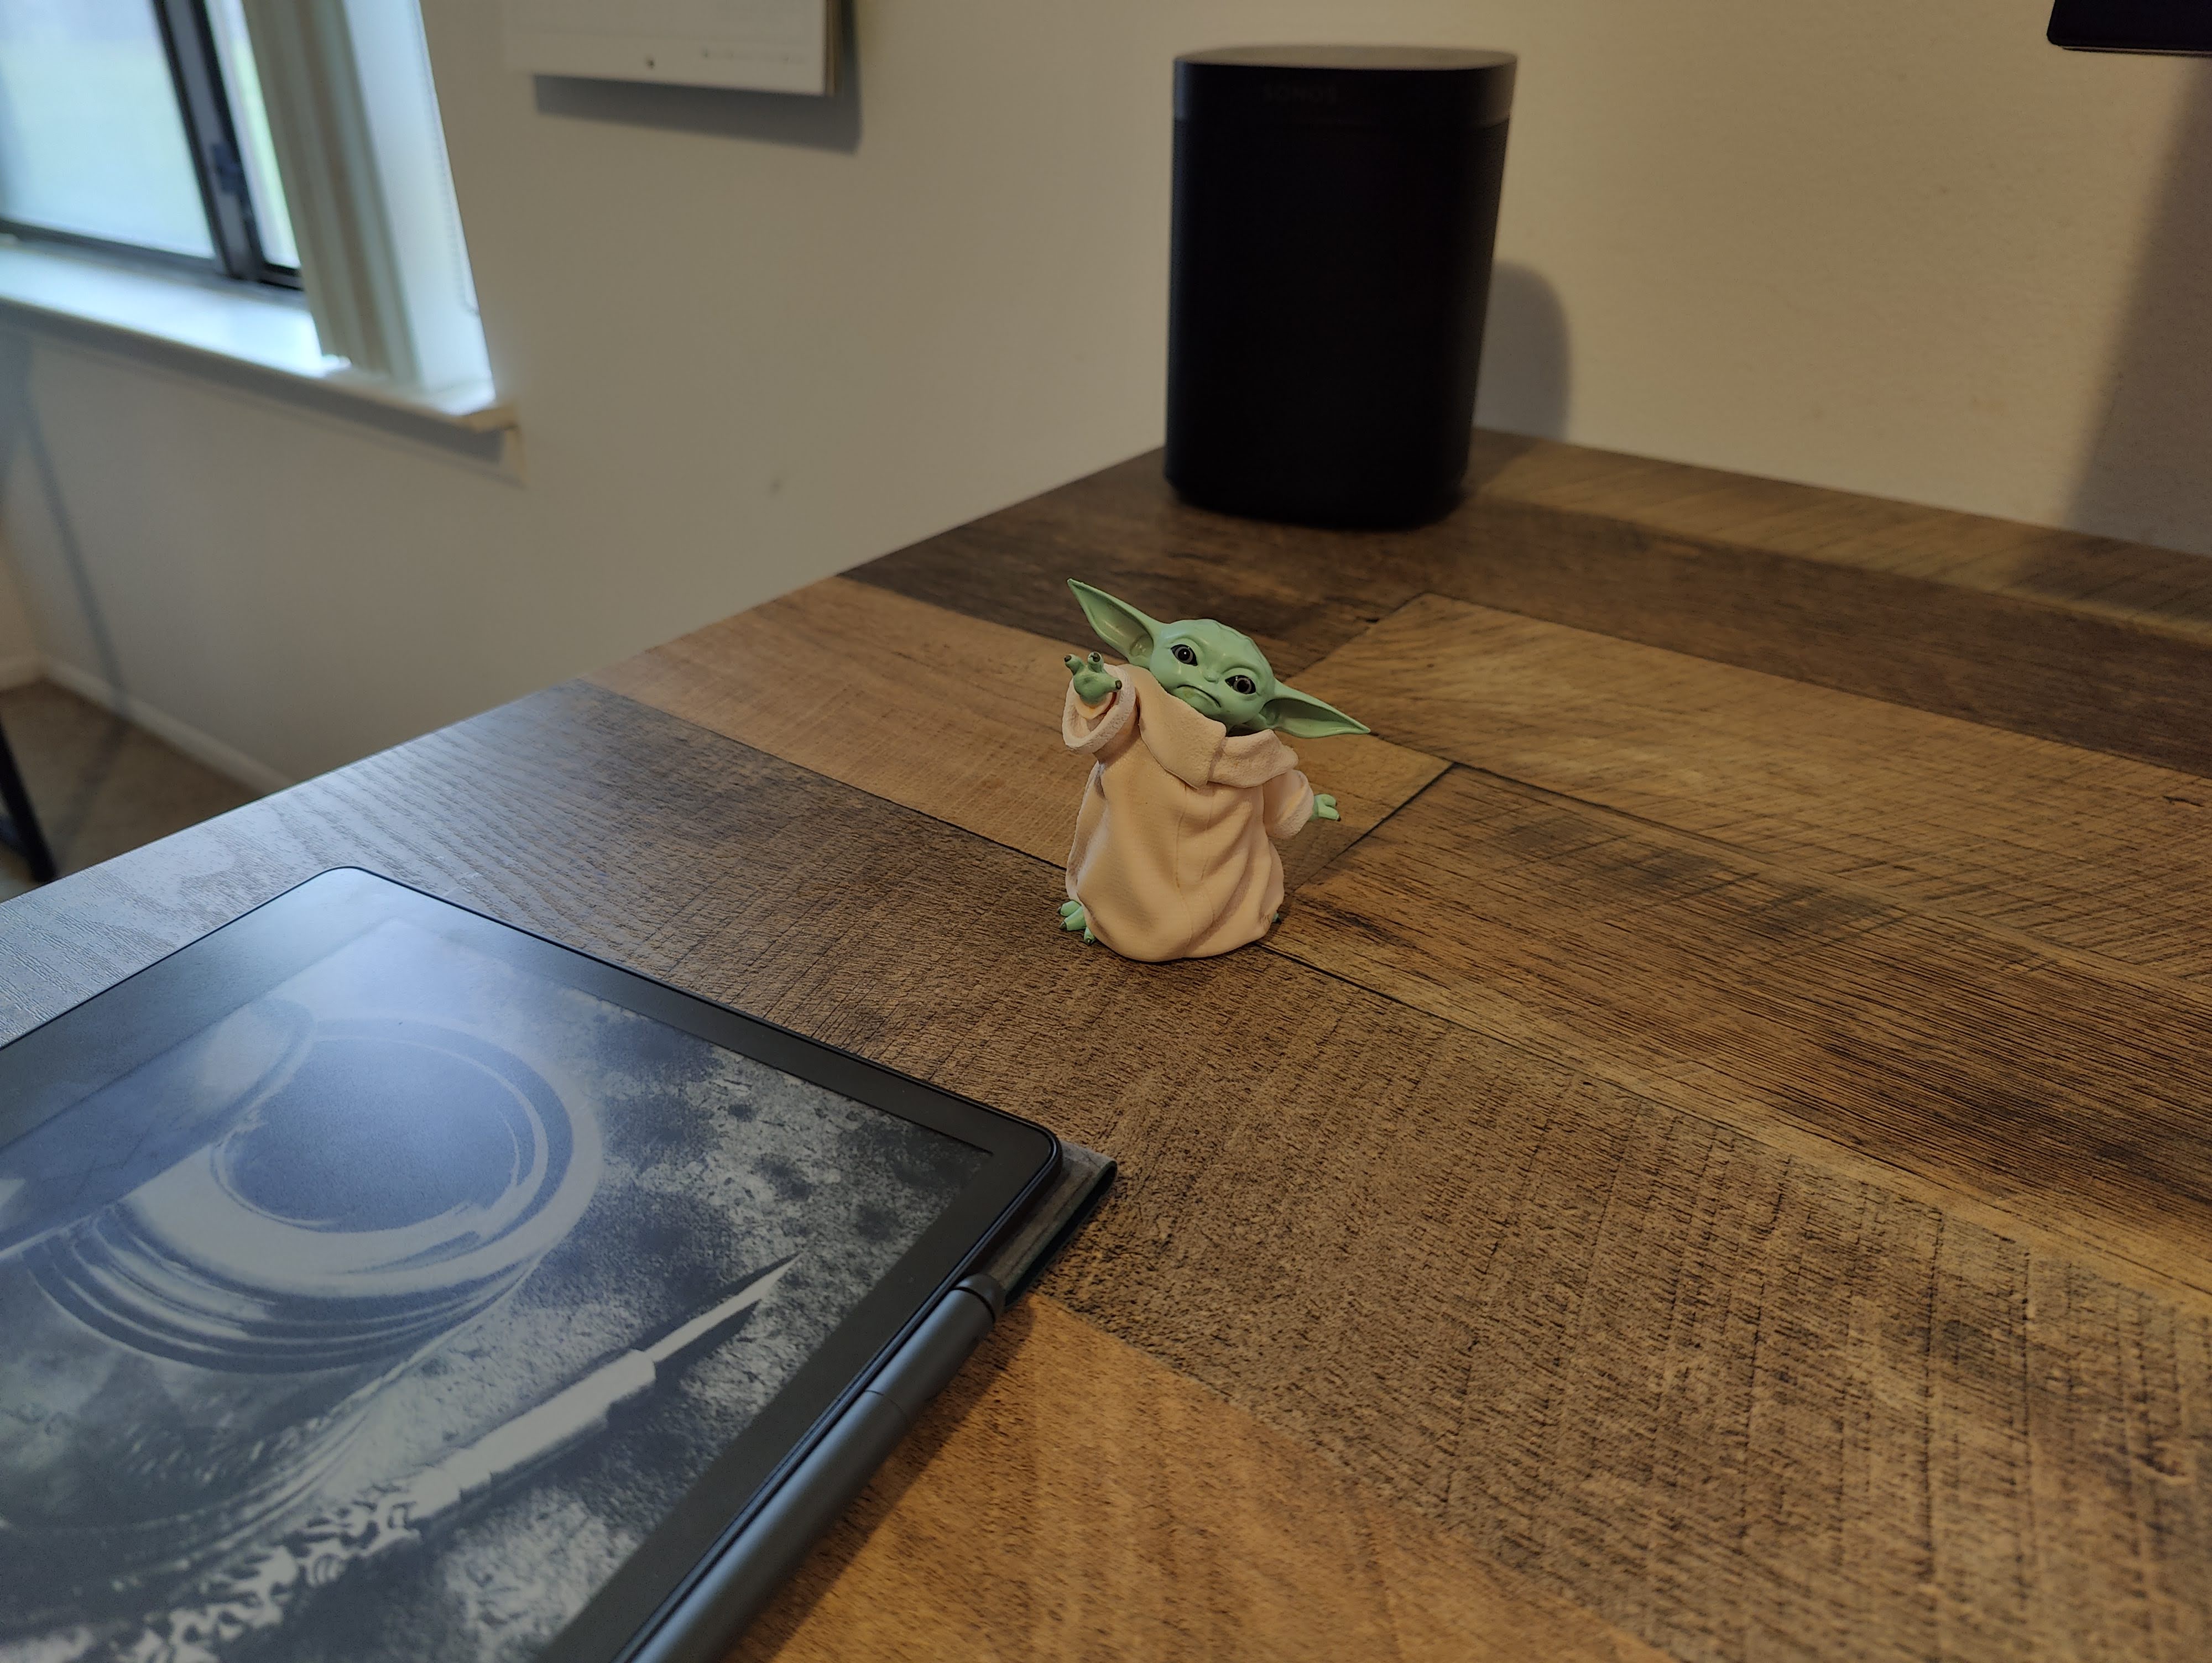 Muestra de cámara del OnePlus 10 Pro.  Es una foto de una pequeña figura de un bebé Yoda sobre un escritorio.